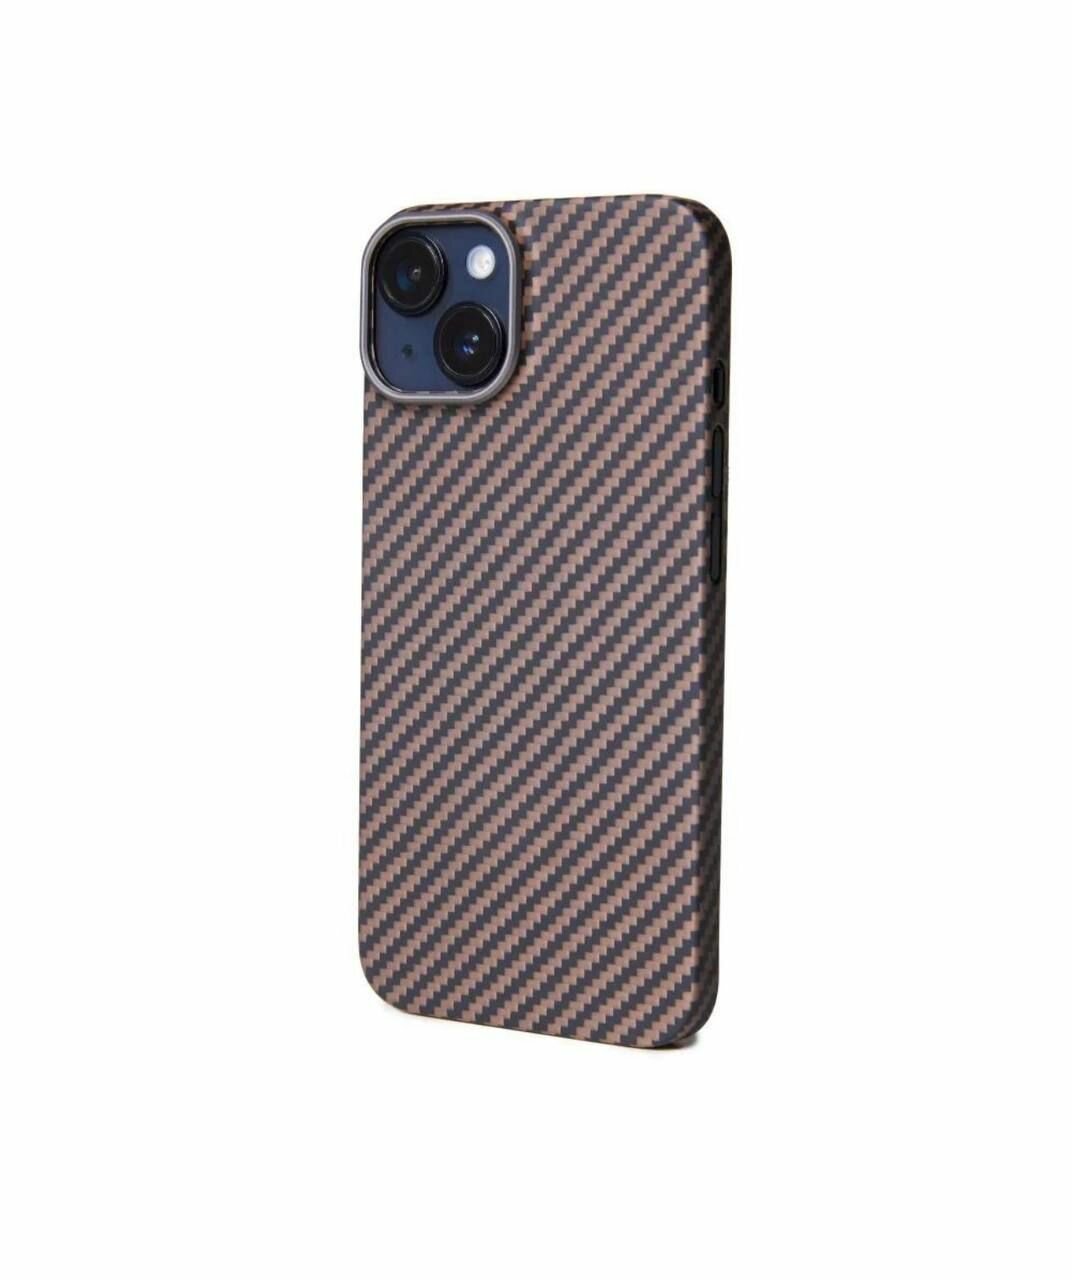 Чехол для iPhone 11 Pro KZDOO Keivlar / Противоударный кевларовый чехол айфона 11 Pro / Карбон / Черно-коричневый